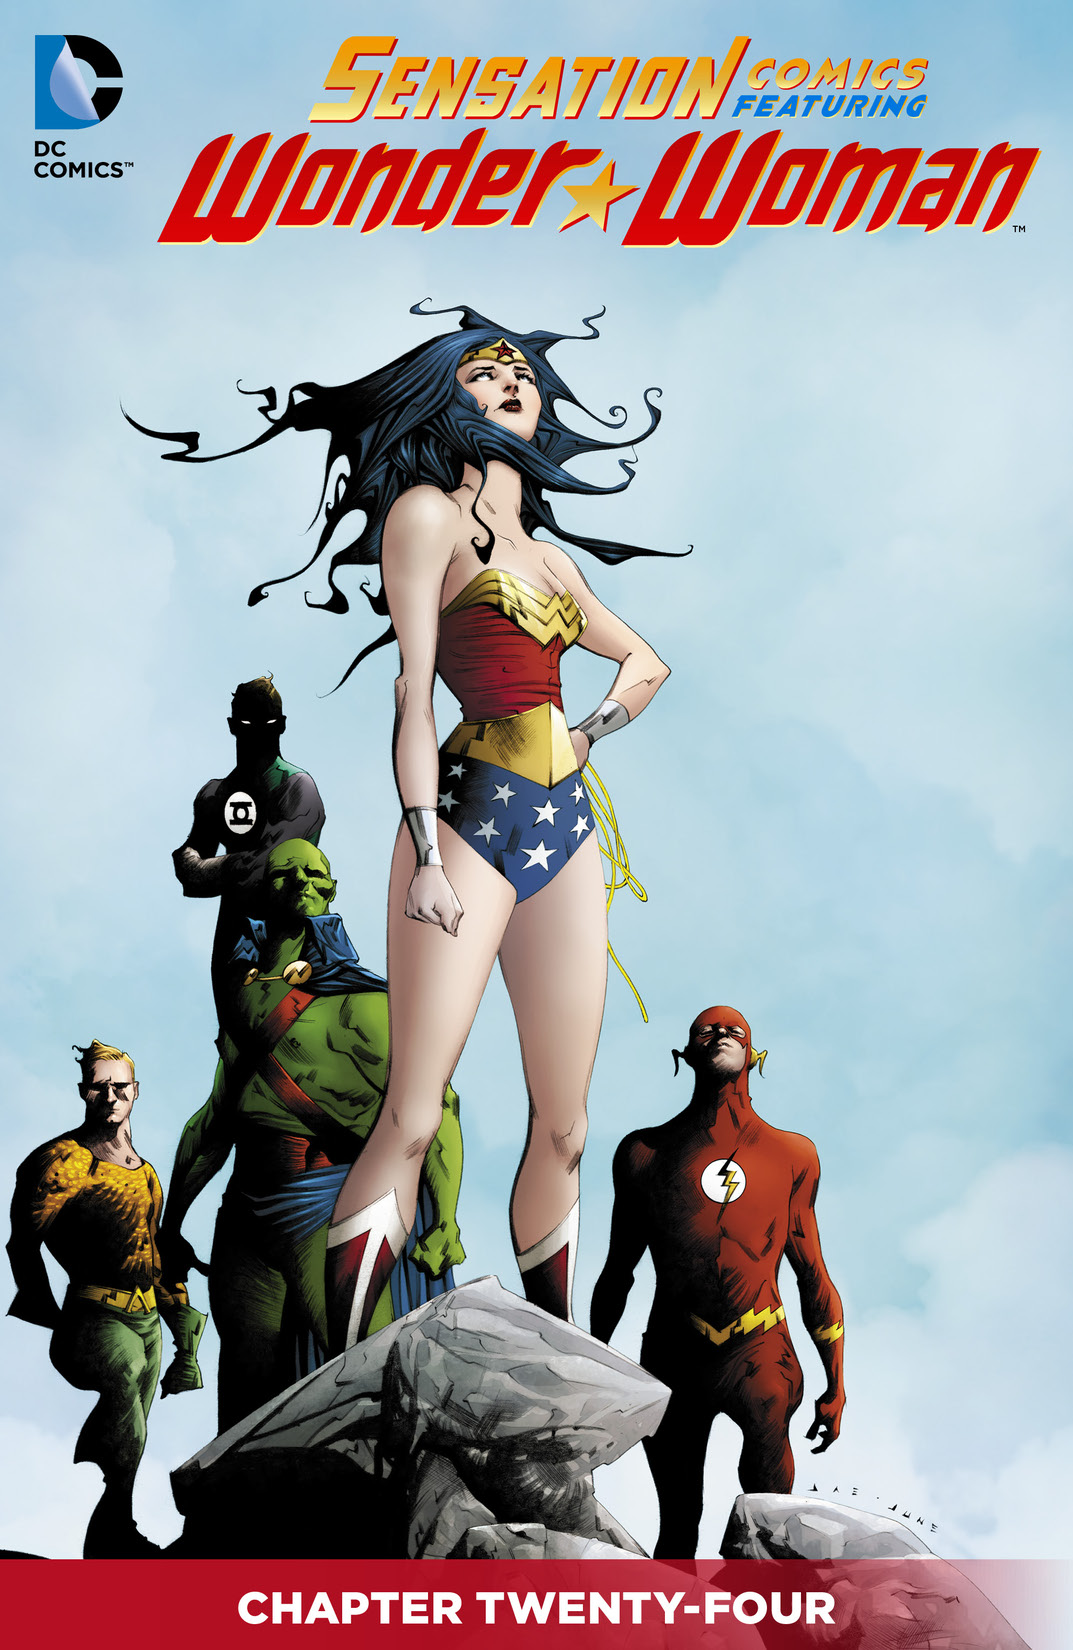 Sensation Comics Featuring Wonder Woman #24 preview images